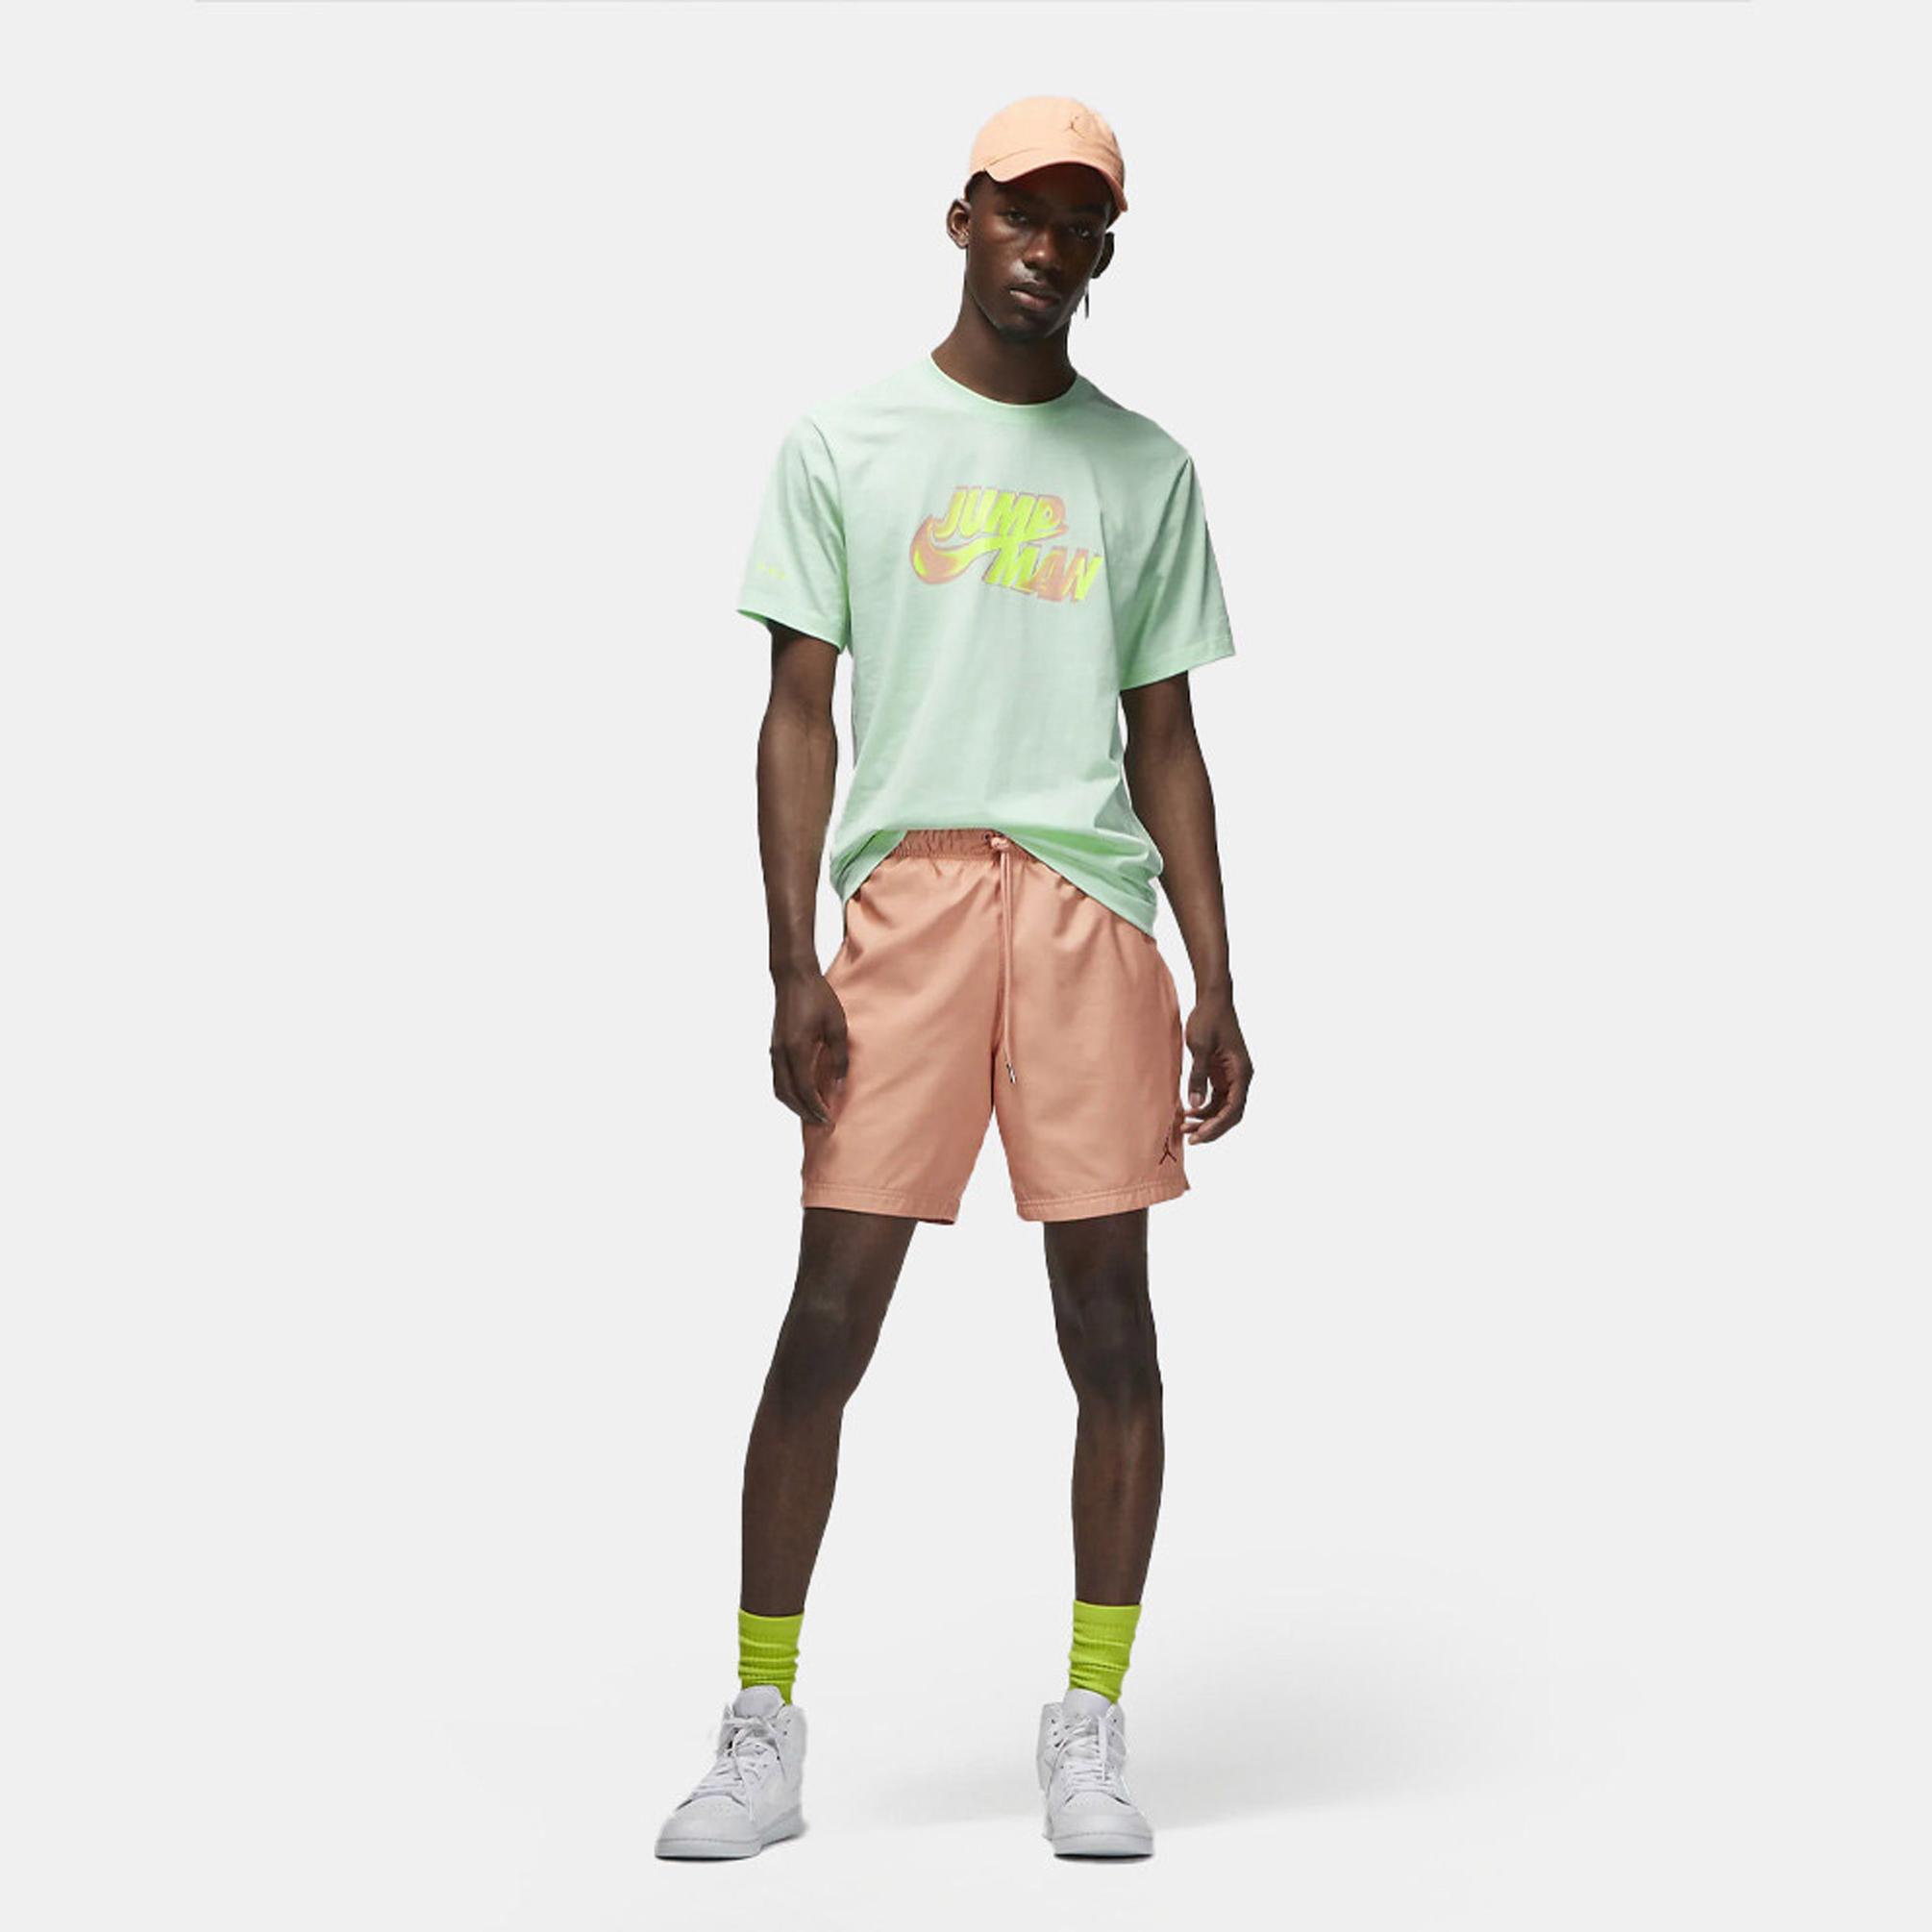  Nike Jordan Erkek Yeşil T-shirt